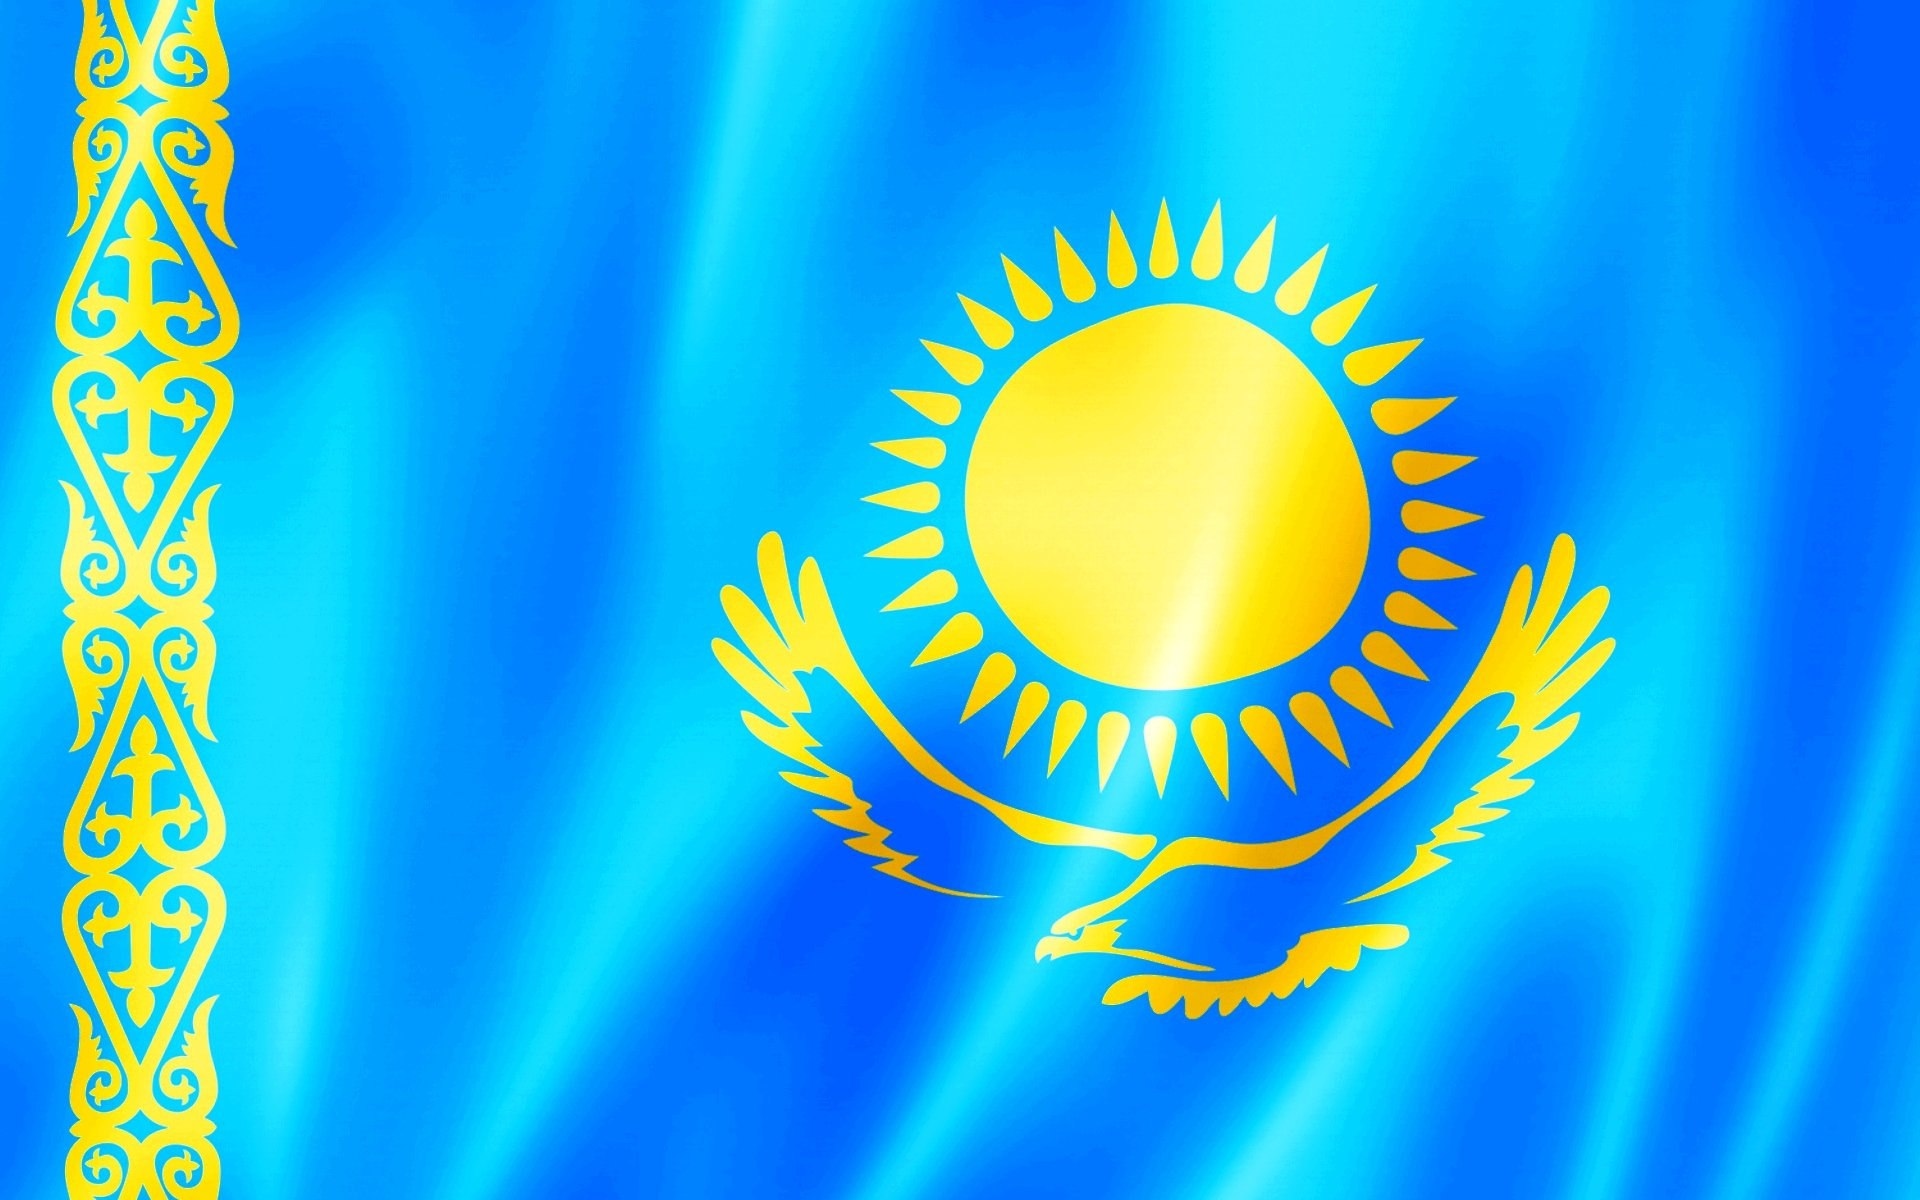 символика казахстана